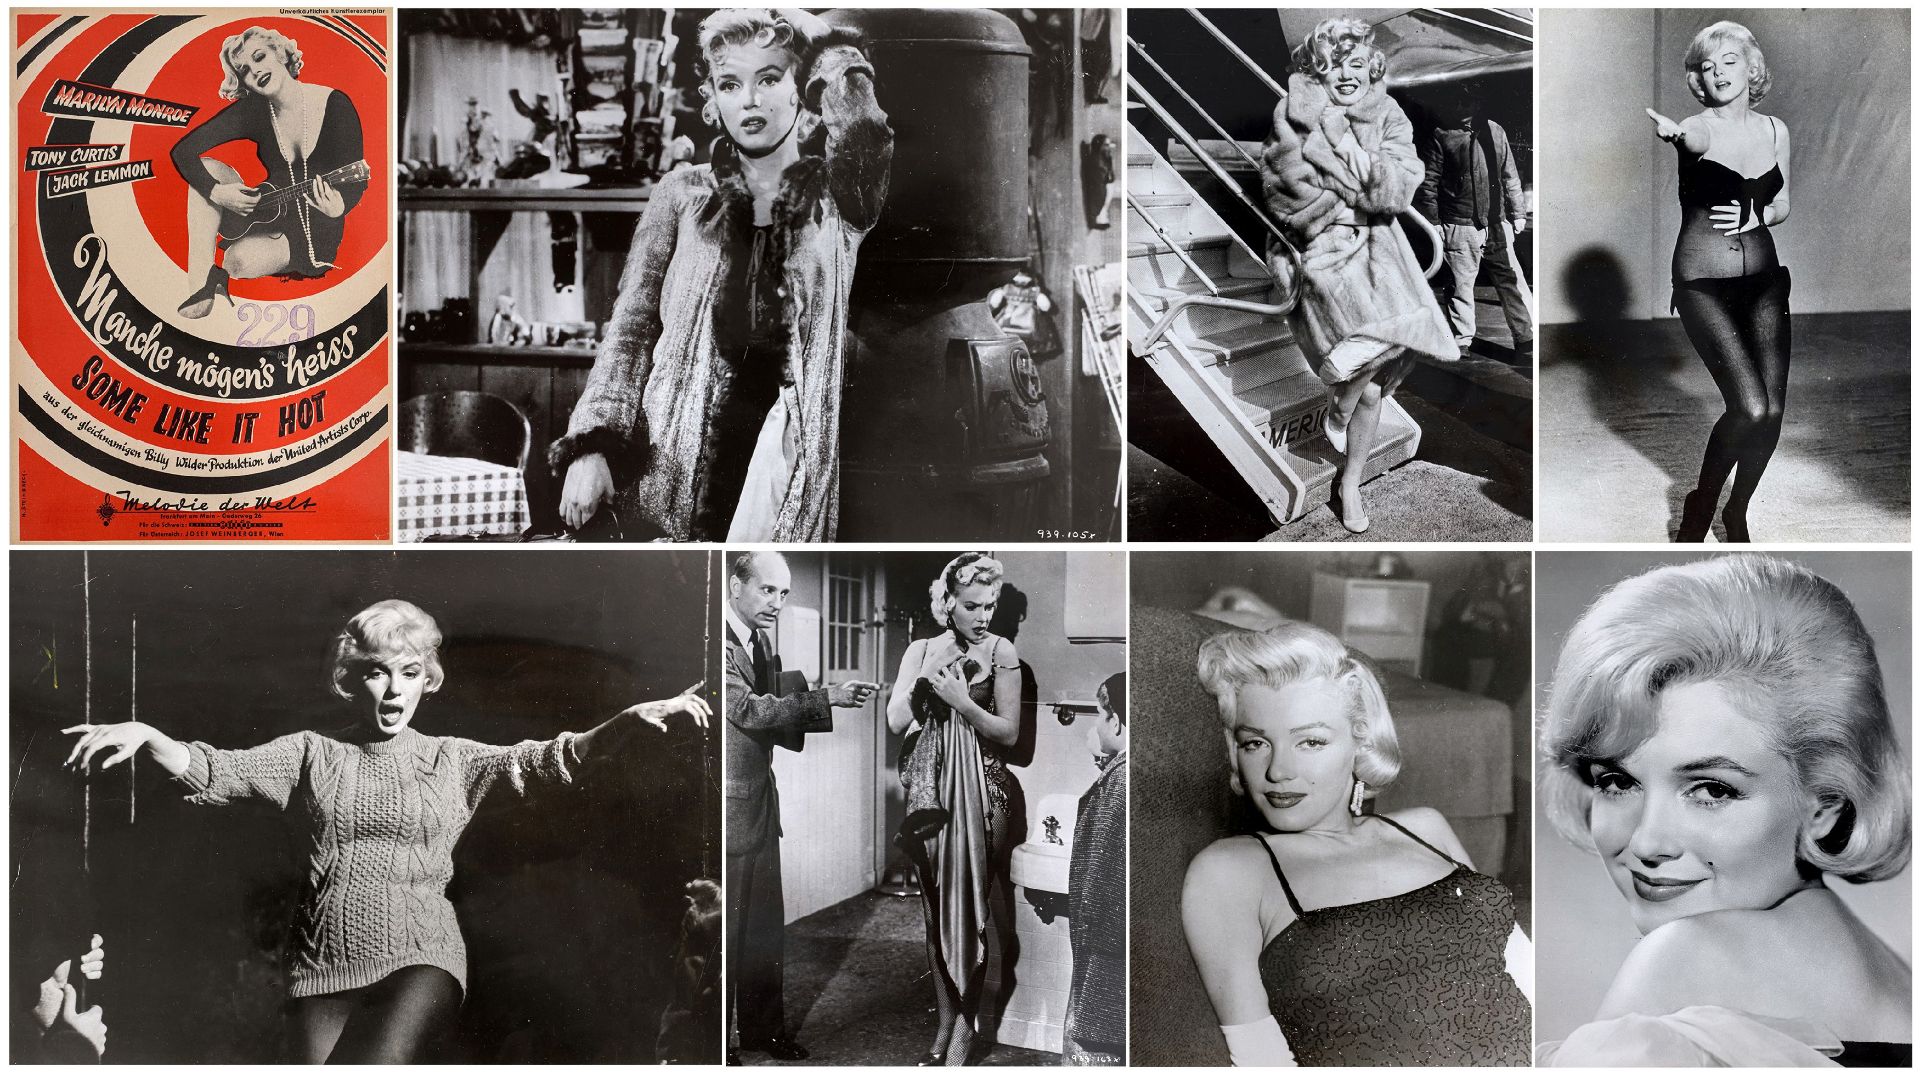 FOTOGRAFIE | 7 Pressefotos von Marilyn Monroe und 1 Notenblatt "Some Like It Hot"